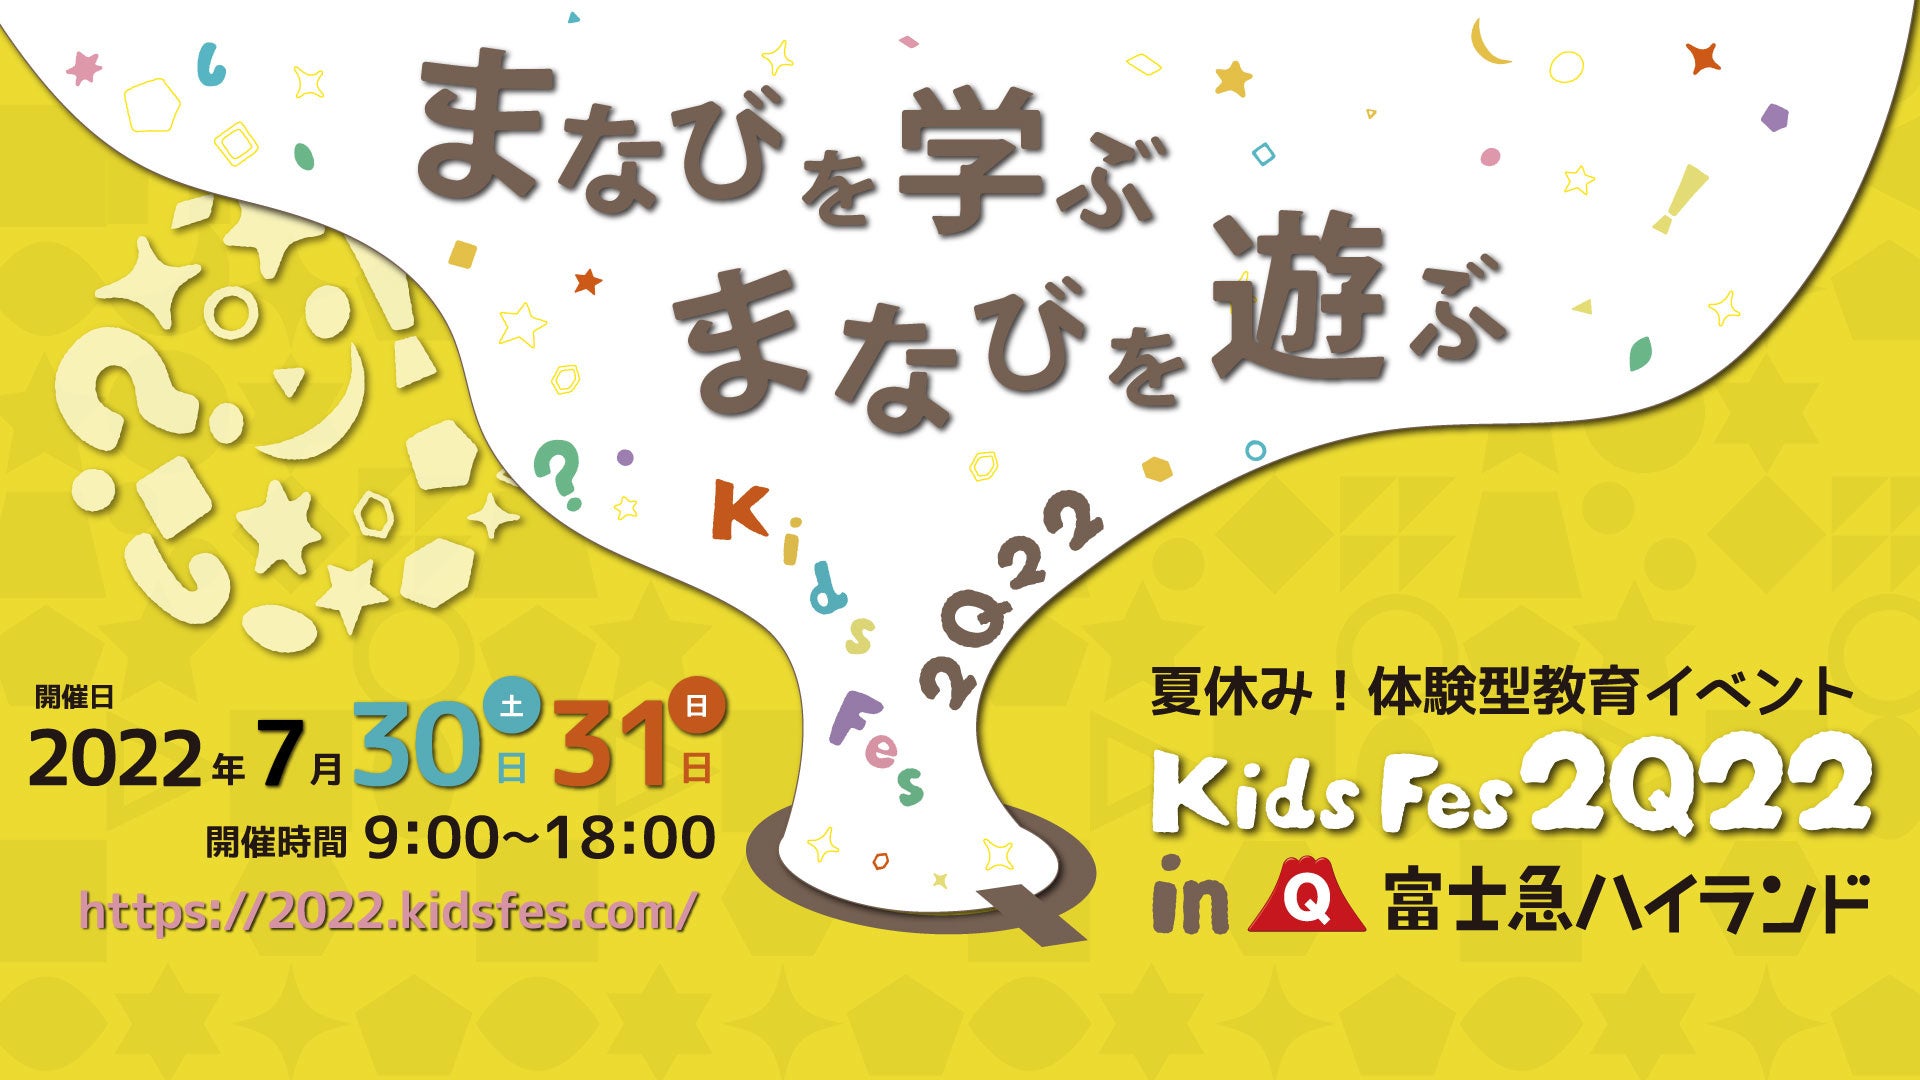 体験型教育イベント『KidsFes2022 in 富士急ハイランド』7/30(土)・31(日)開催!!のサブ画像1